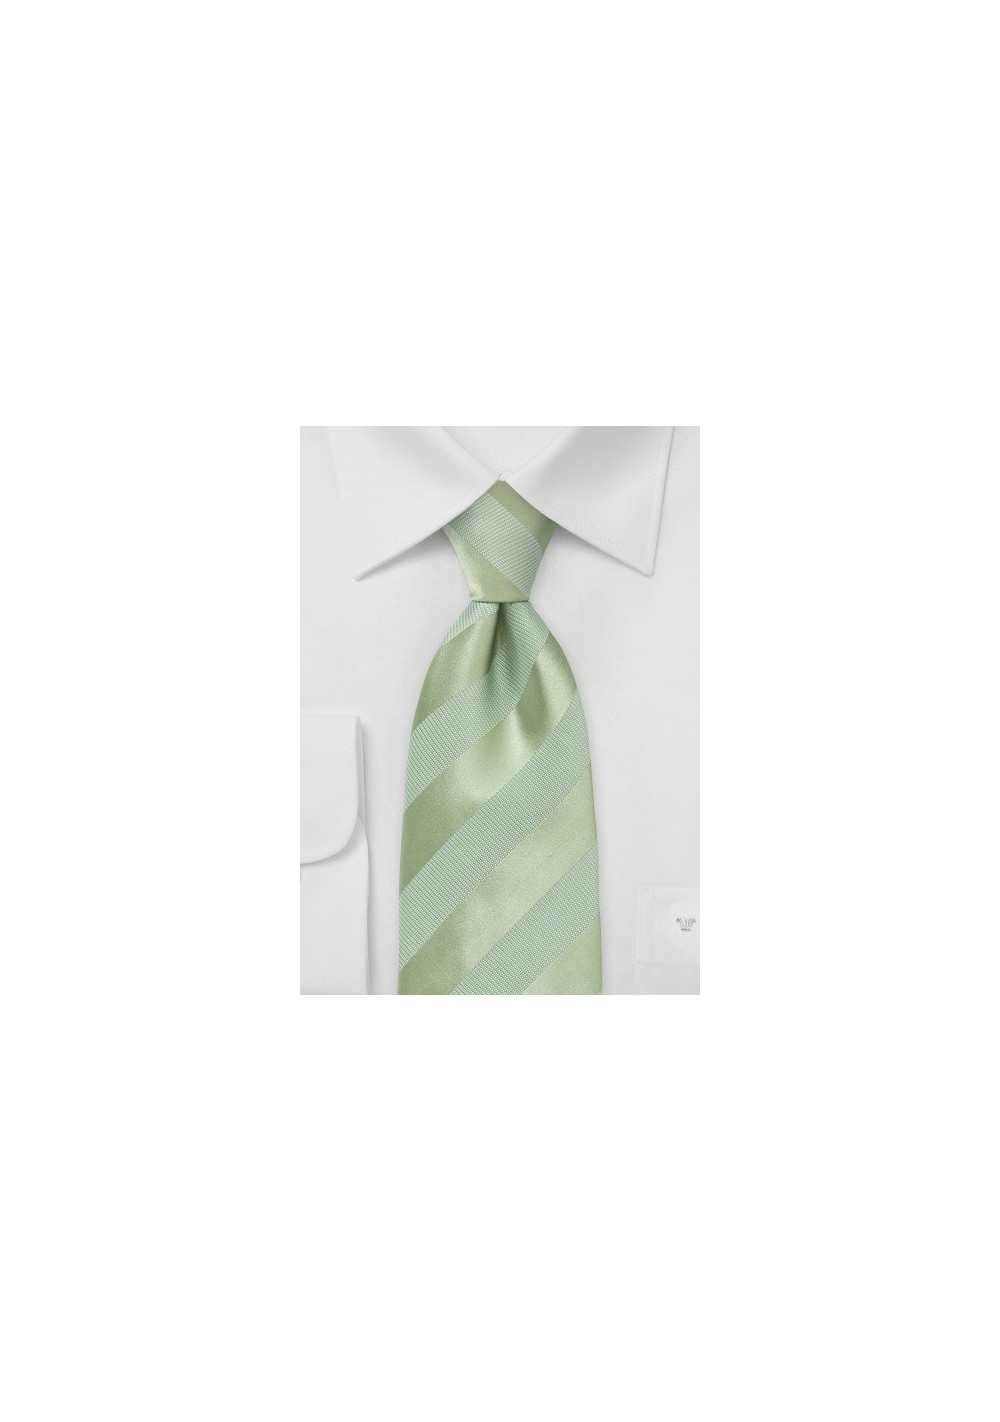 Striped Tie in Moss Green